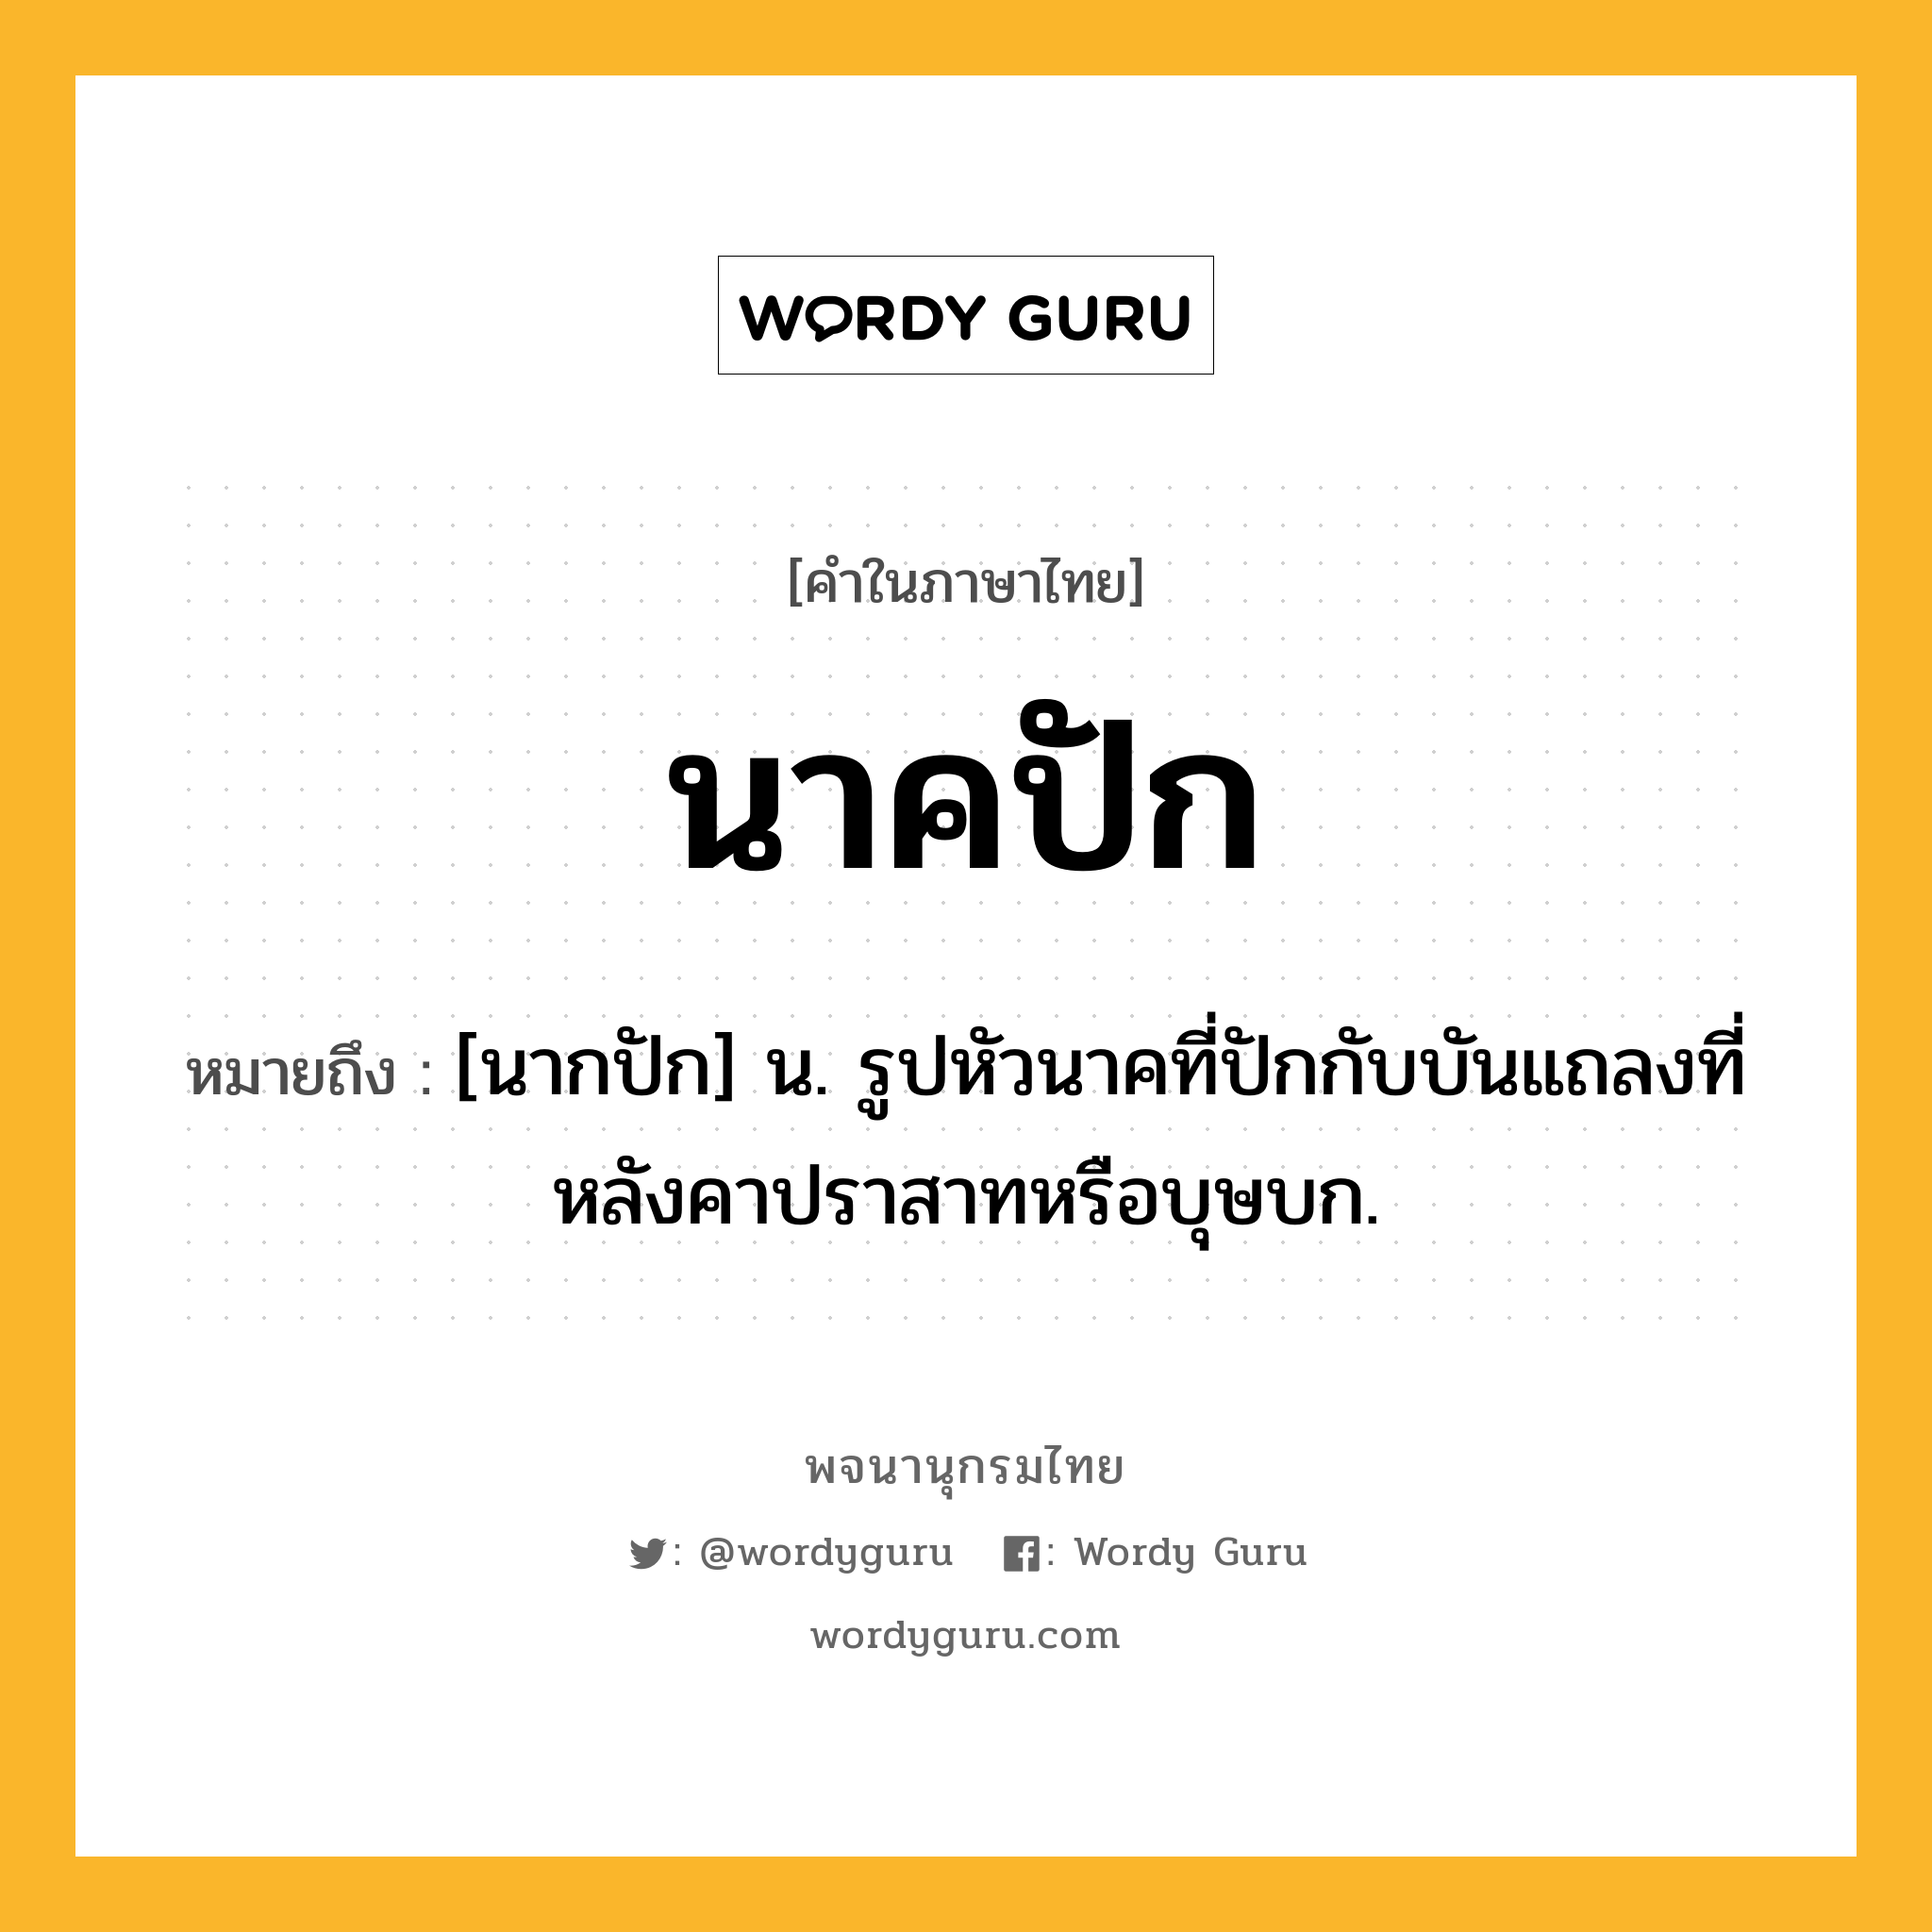 นาคปัก ความหมาย หมายถึงอะไร?, คำในภาษาไทย นาคปัก หมายถึง [นากปัก] น. รูปหัวนาคที่ปักกับบันแถลงที่หลังคาปราสาทหรือบุษบก.